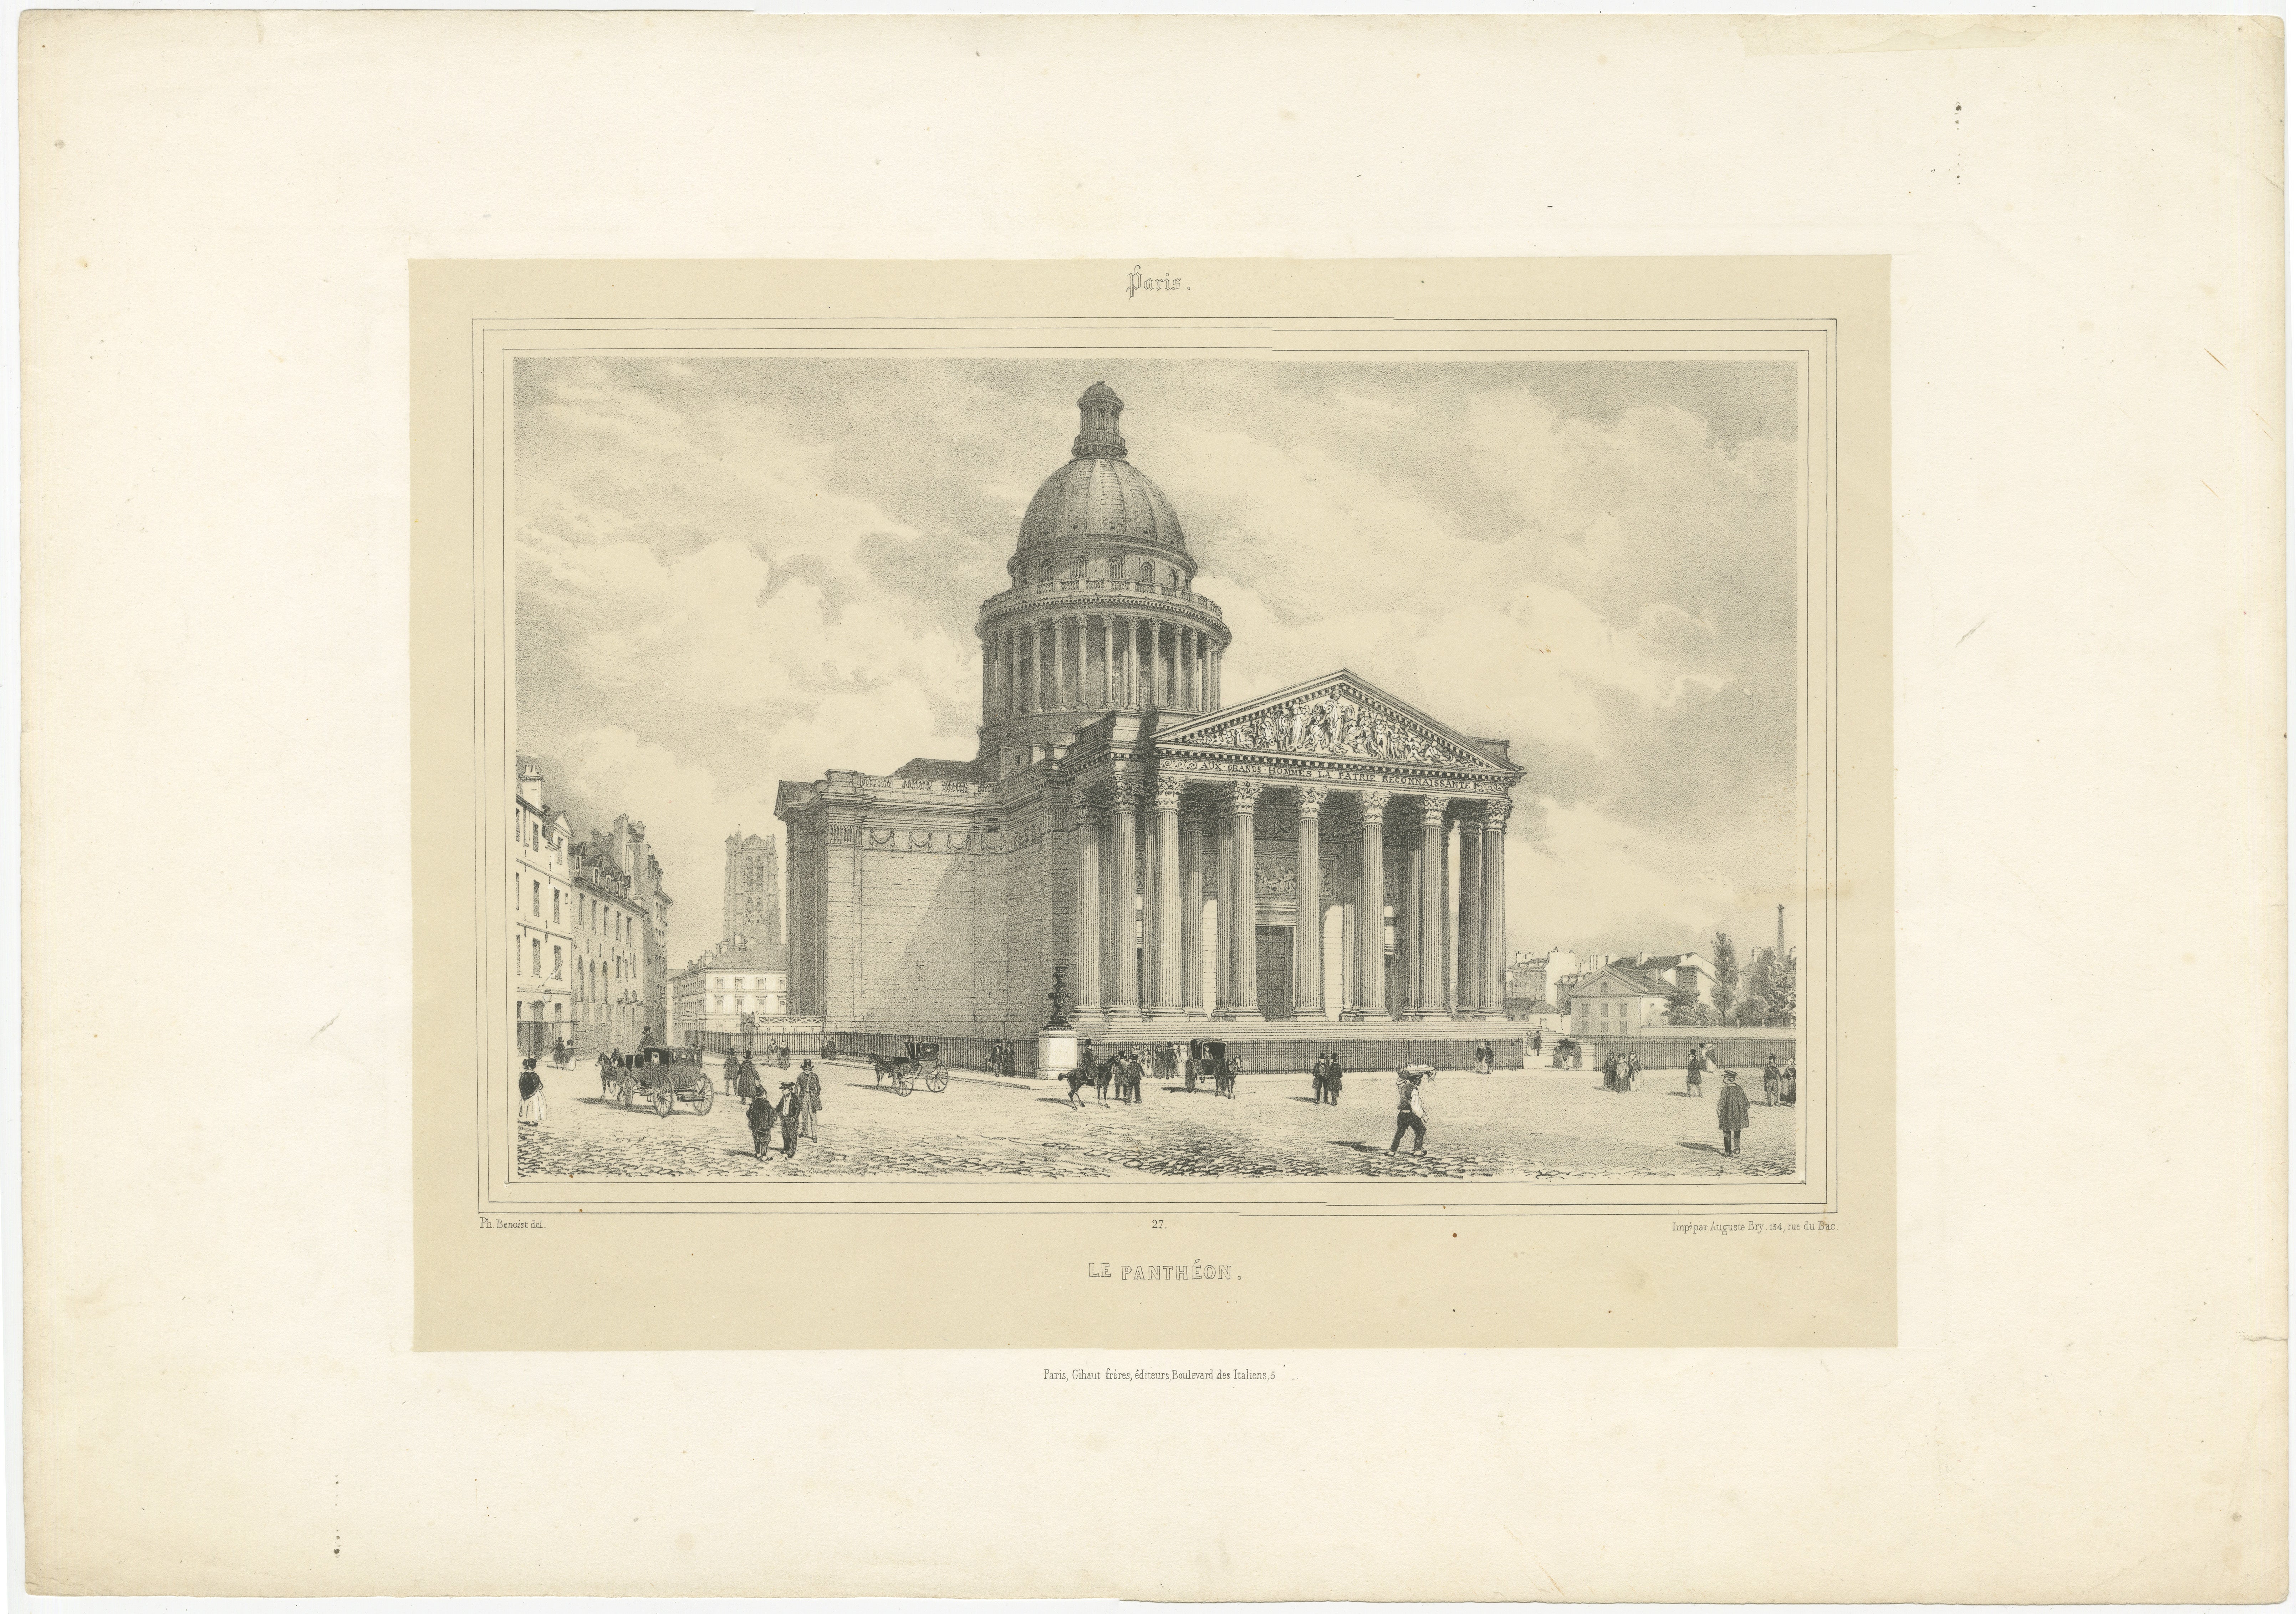 Das Bild ist ein Stich des Panthéon in Paris, geschaffen von Auguste Bry (1805-1880) und Philippe Benoist (1813-). 

Das Panthéon war ursprünglich eine der heiligen Genevieve geweihte Kirche, dient aber heute als Mausoleum für die sterblichen